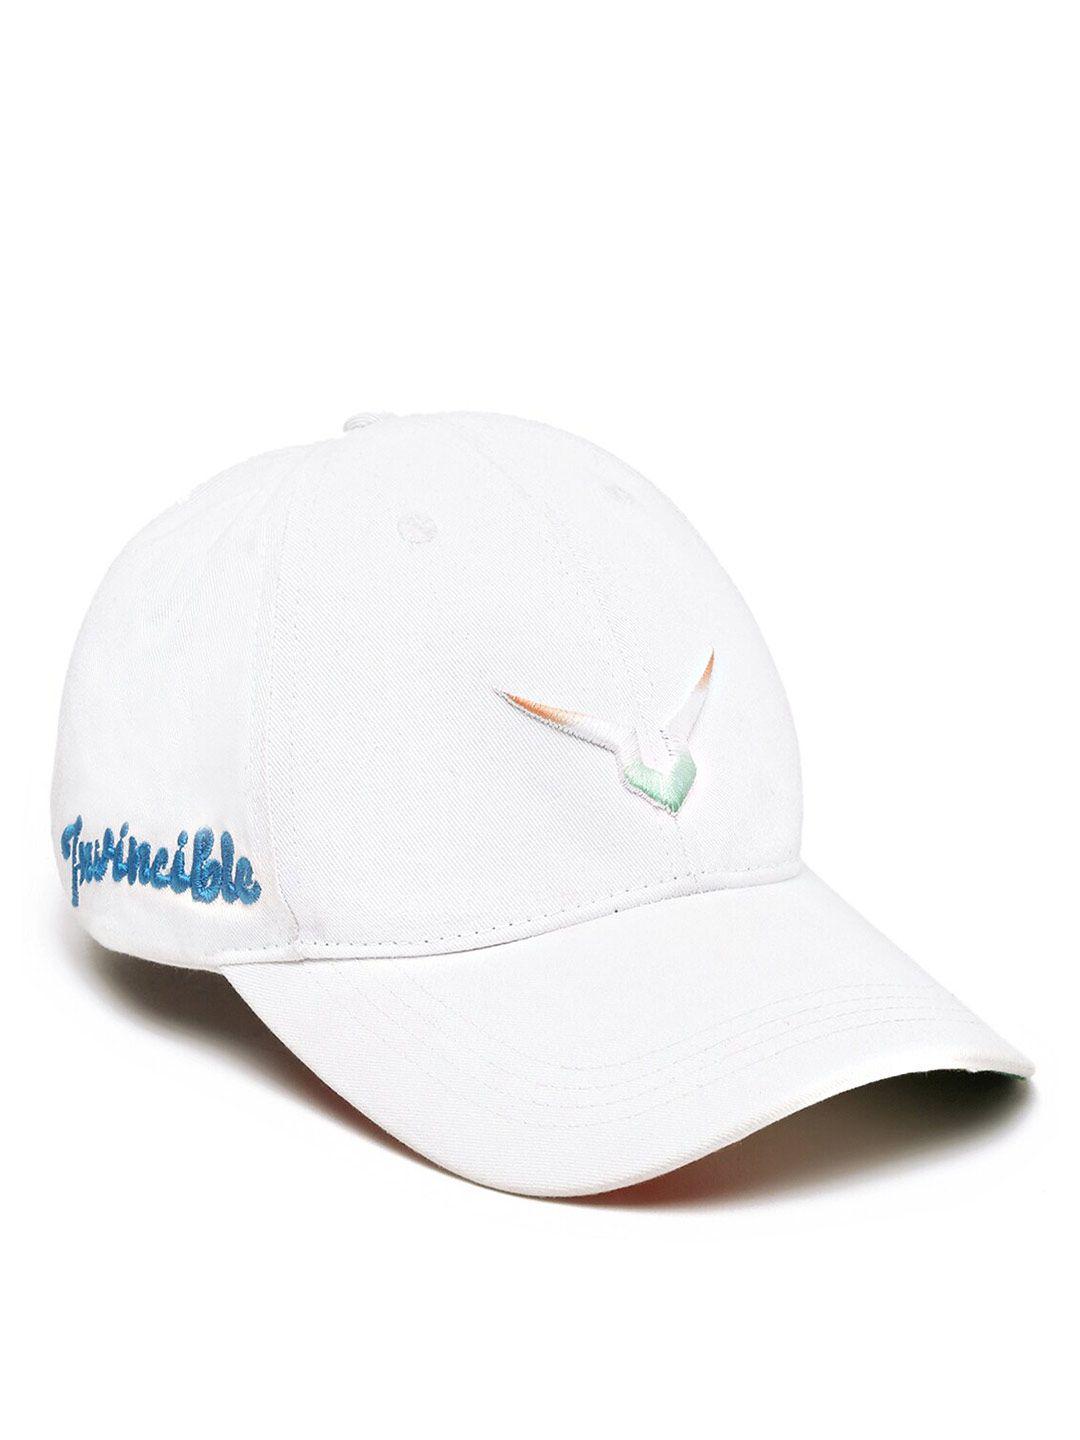 invincible cotton baseball cap